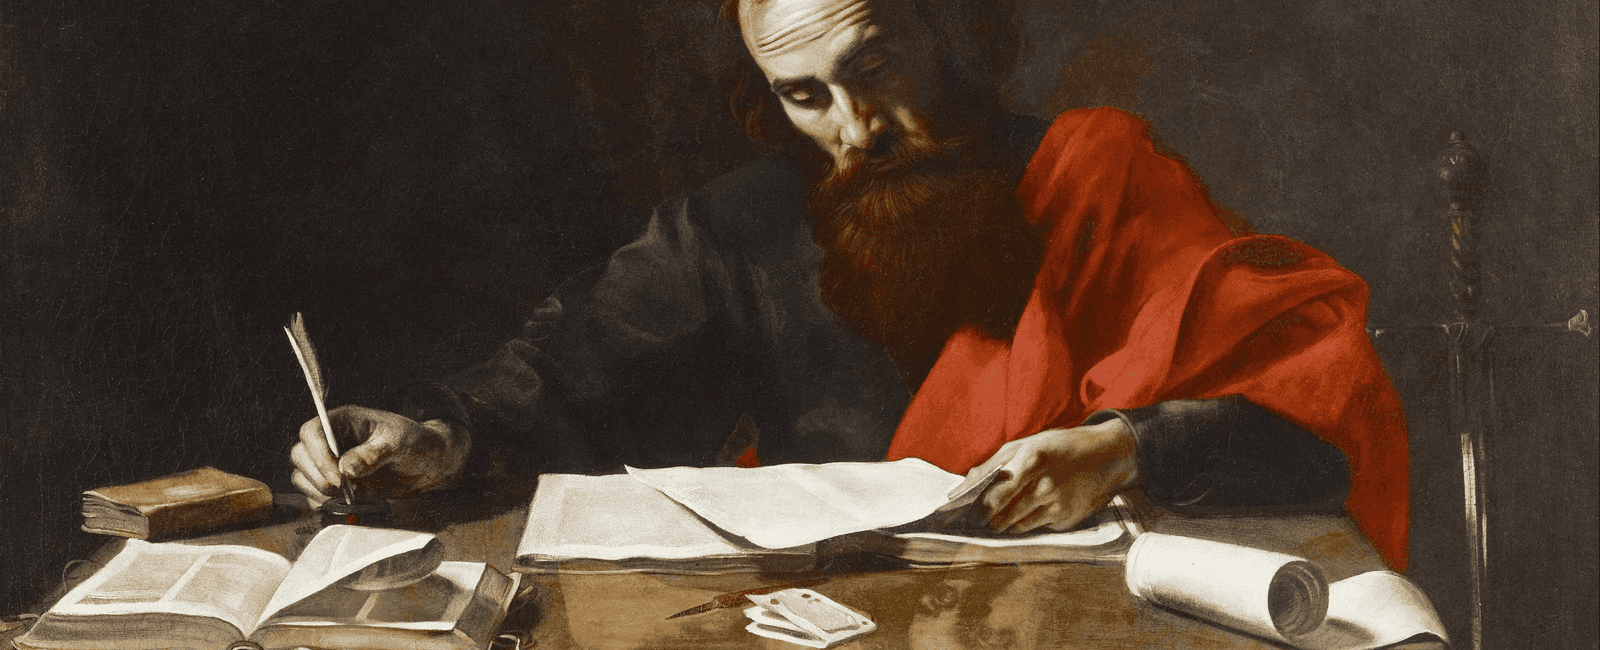 faith and reason through christian history a theological essay